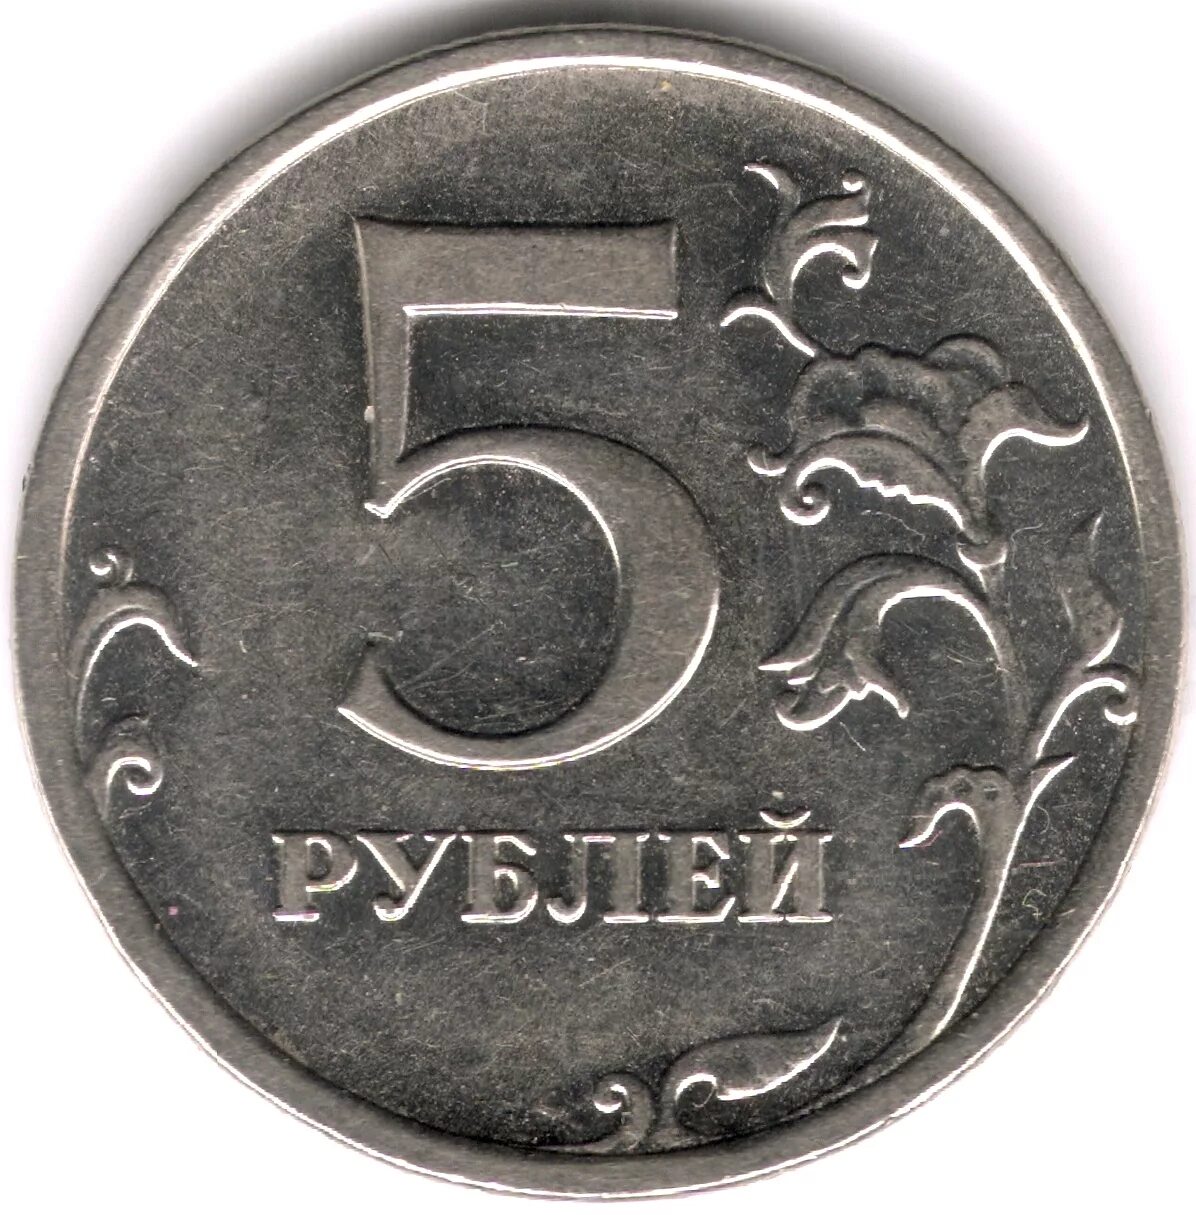 Рубль 5 34. 5 Рублей 1998 ММД шт.а1 и шт.а2. Редкие монеты 5 рублей СПМД. Монета 5 руб. 2012 г. ММД магнитная.. Ценные пятирублевые монеты.